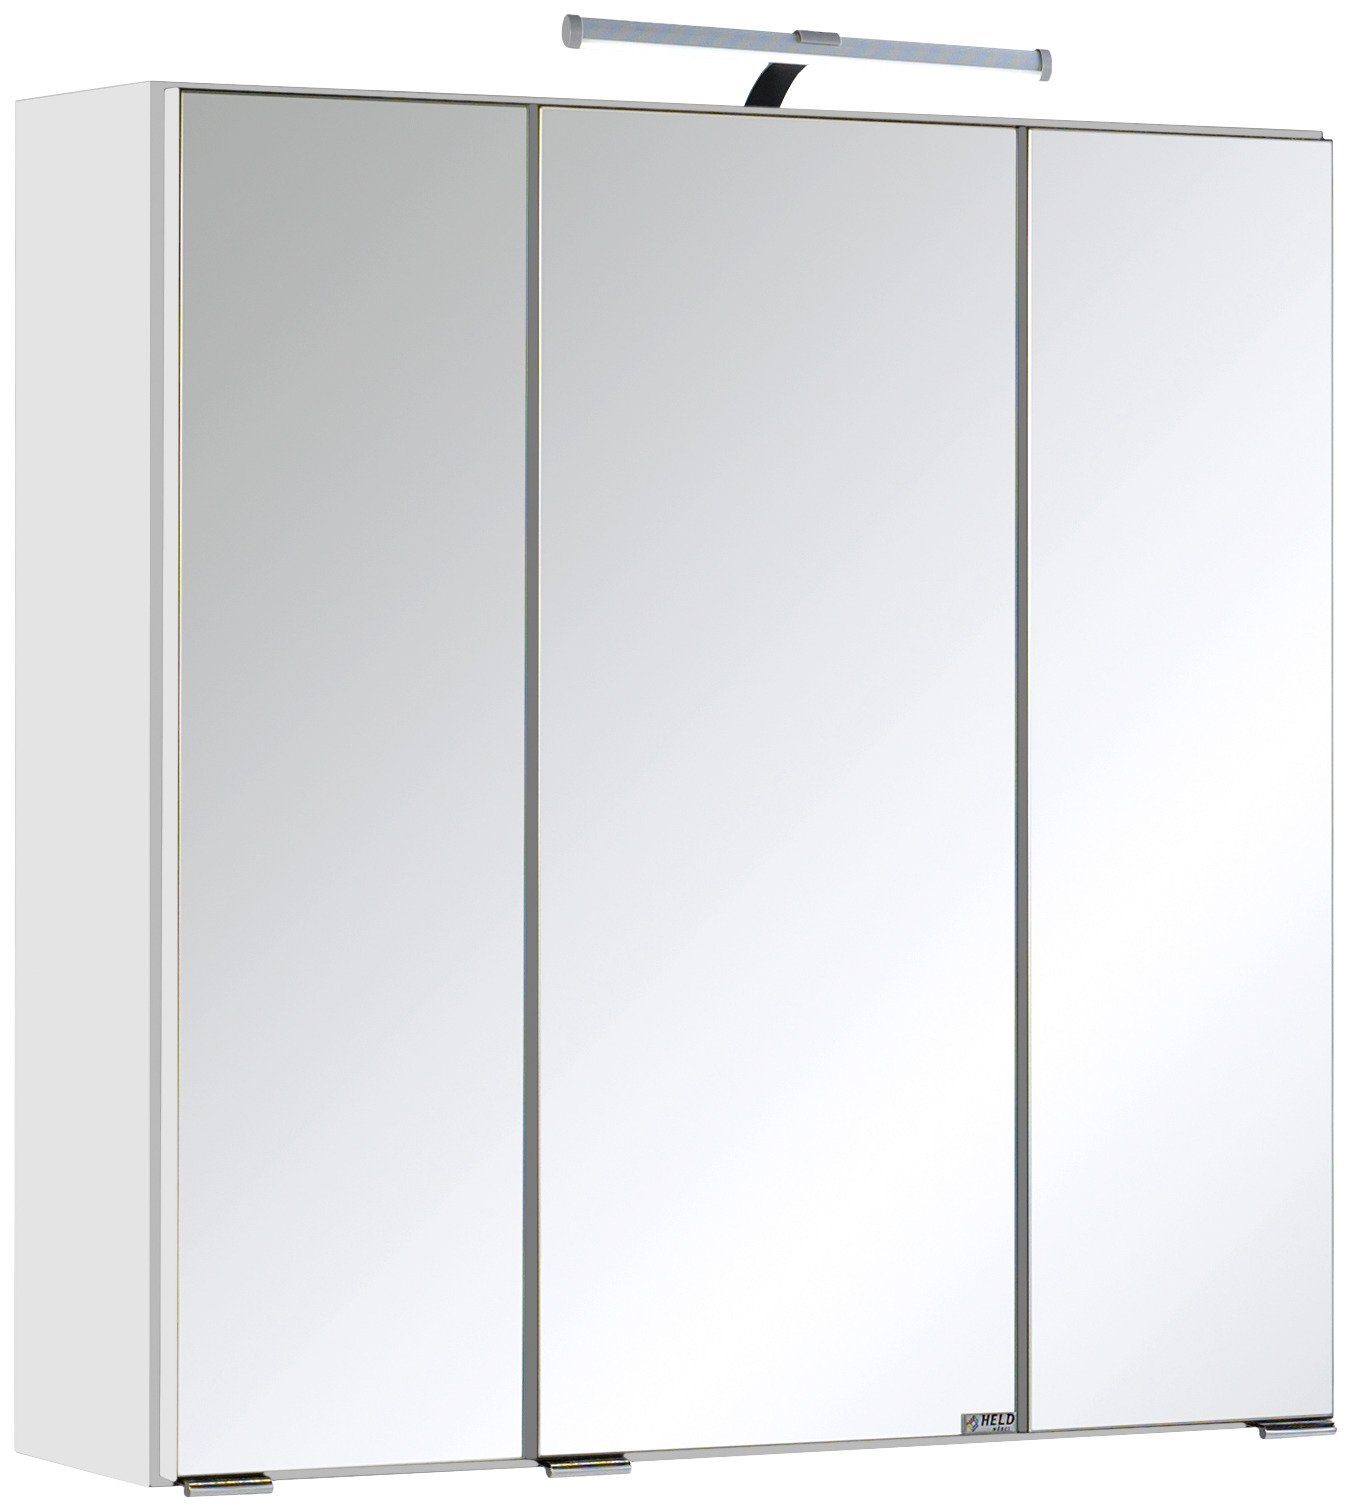 HELD MÖBEL Spiegelschrank Texas Spiegel mit Licht Badmöbel Badschrank Badspiegel Bestseller mit 3 Türen, Breite 60cm, mit LED, Badmöbel, Badezimmerspiegelschrank weiß